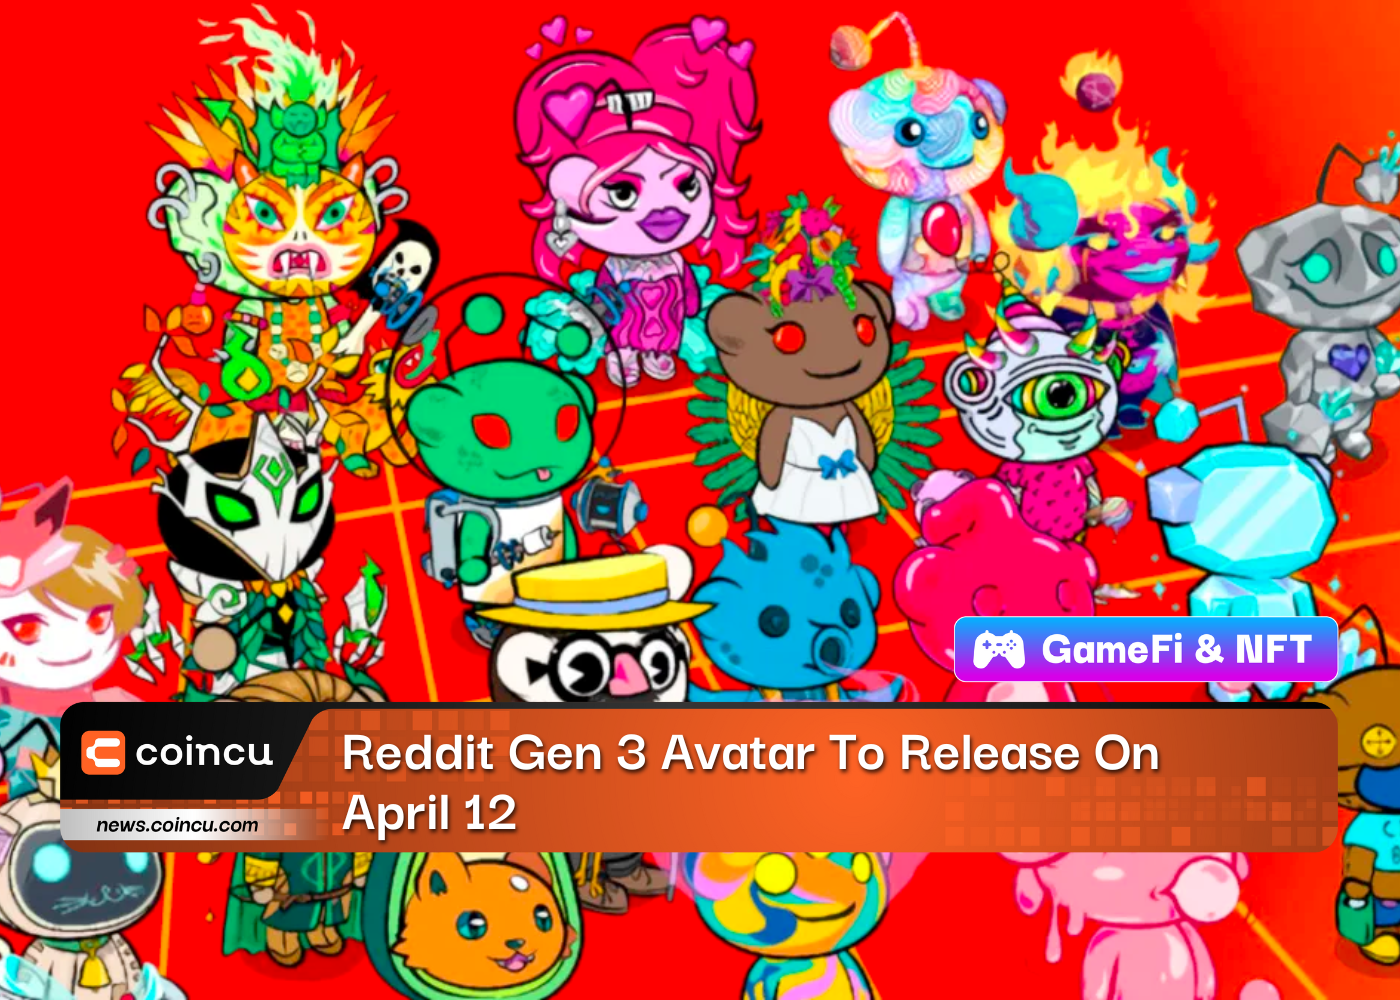 Reddit Gen 3 Avatar To Release On April 12